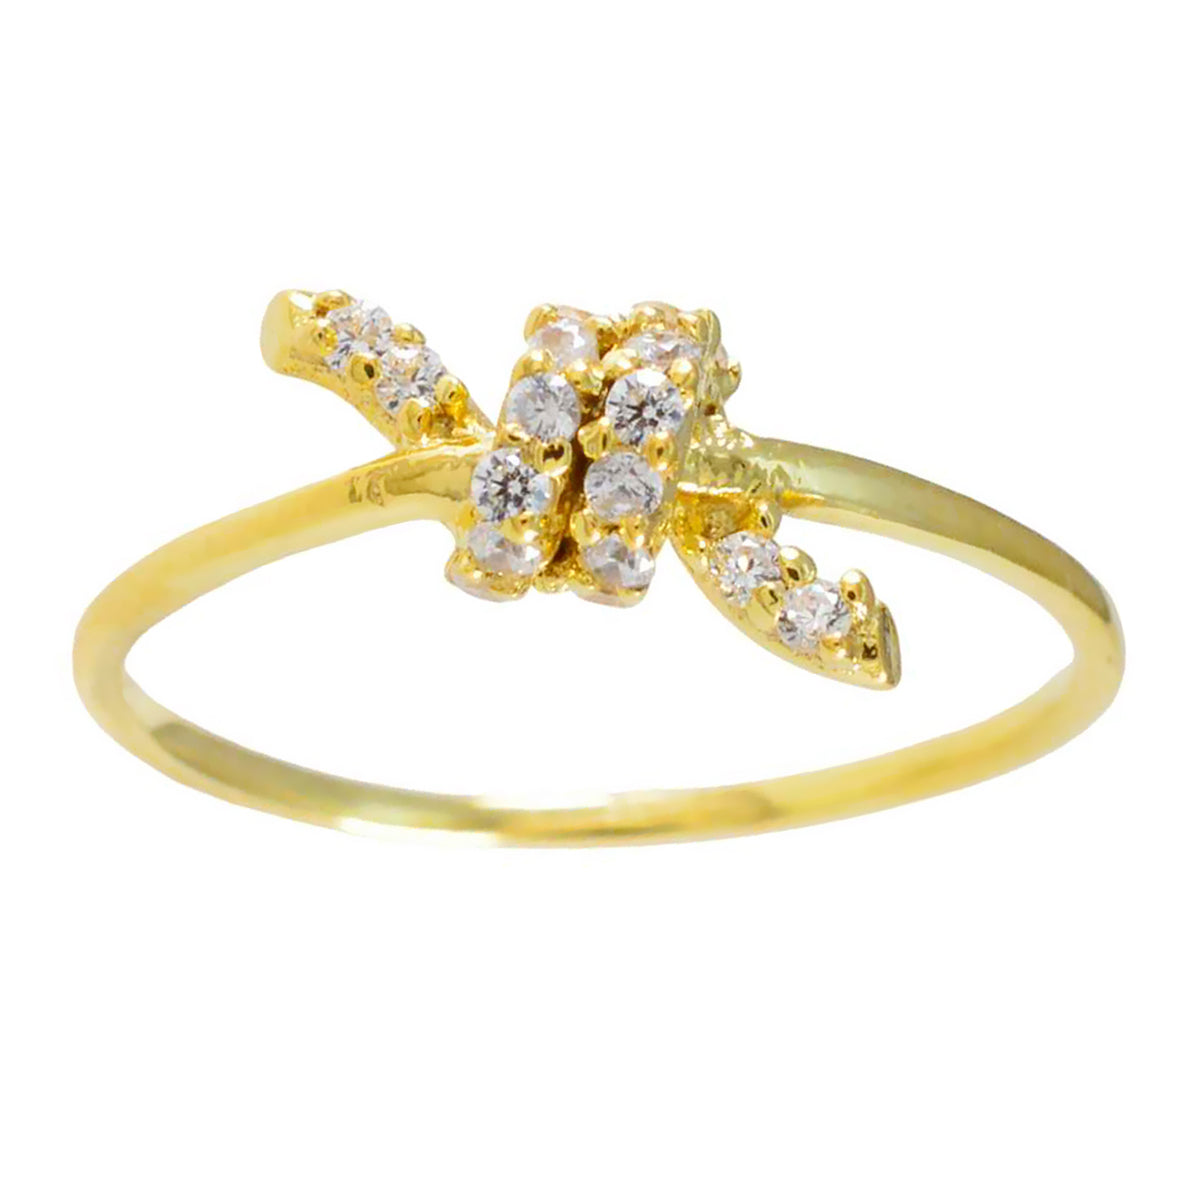 Riyo Supplies Silberring mit Gelbgoldbeschichtung, runder Ring mit Krappenfassung und weißem CZ-Stein